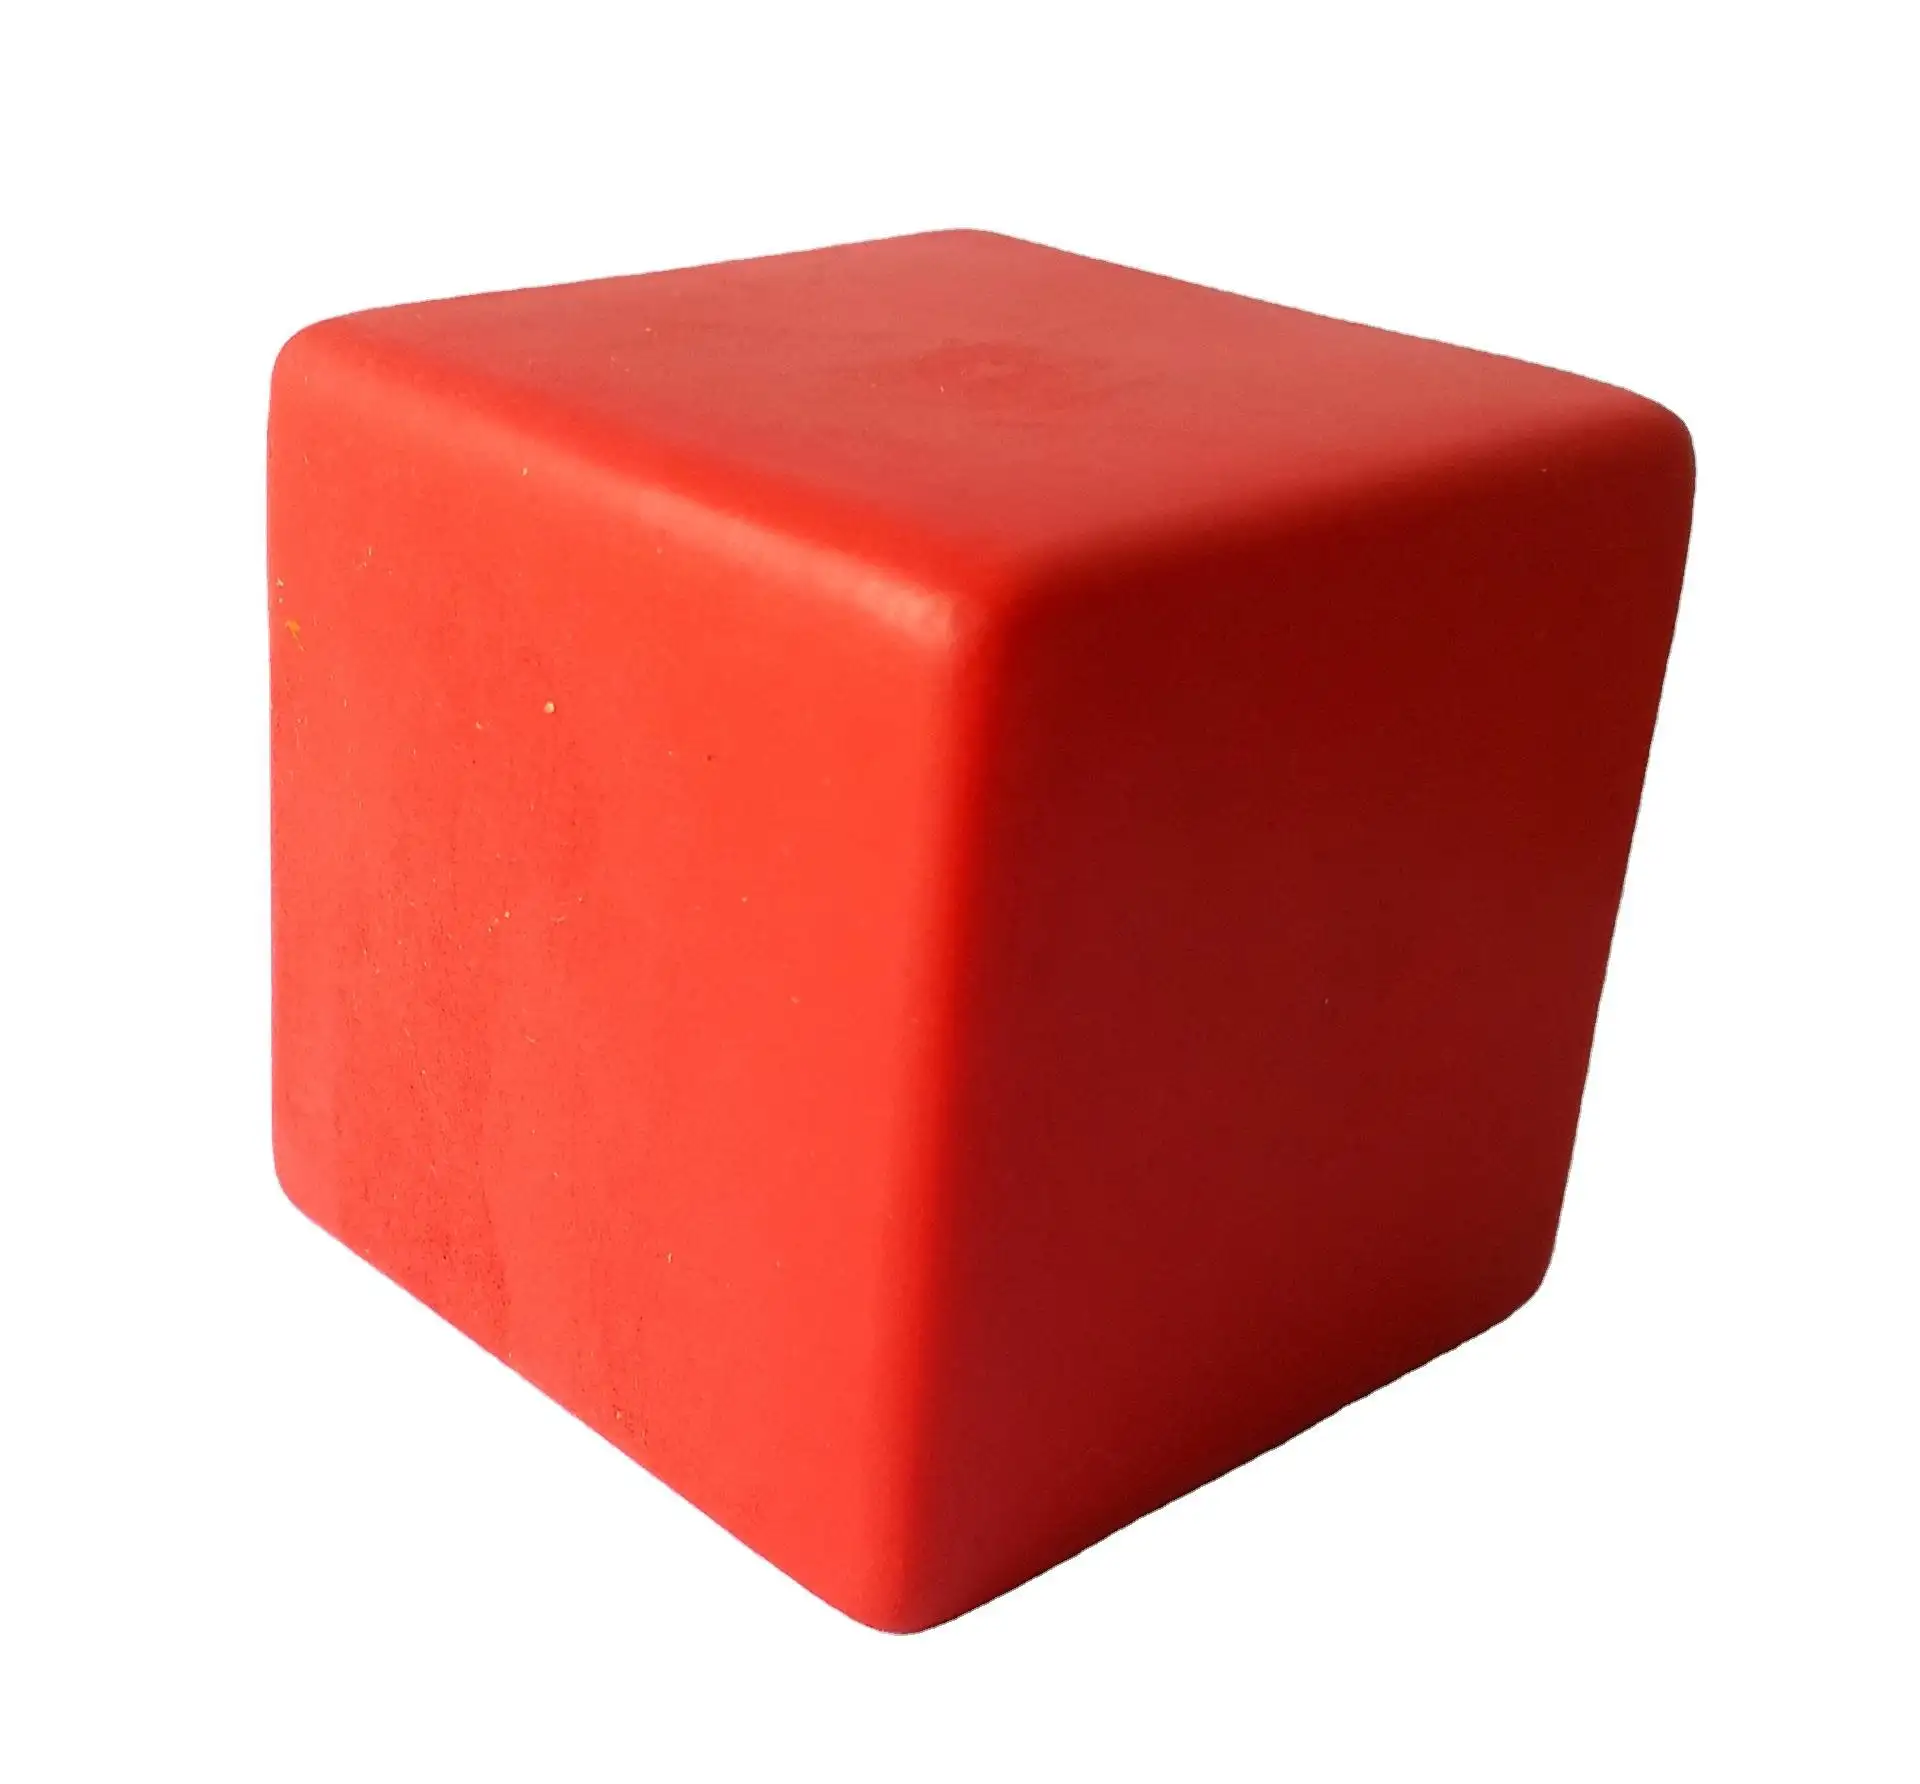 Персонализированный кубик-антистресс из полиуретановой пены с логотипом под заказ из полиуретановой пены кубик антистресс игрушки для снятия стресса для рекламы